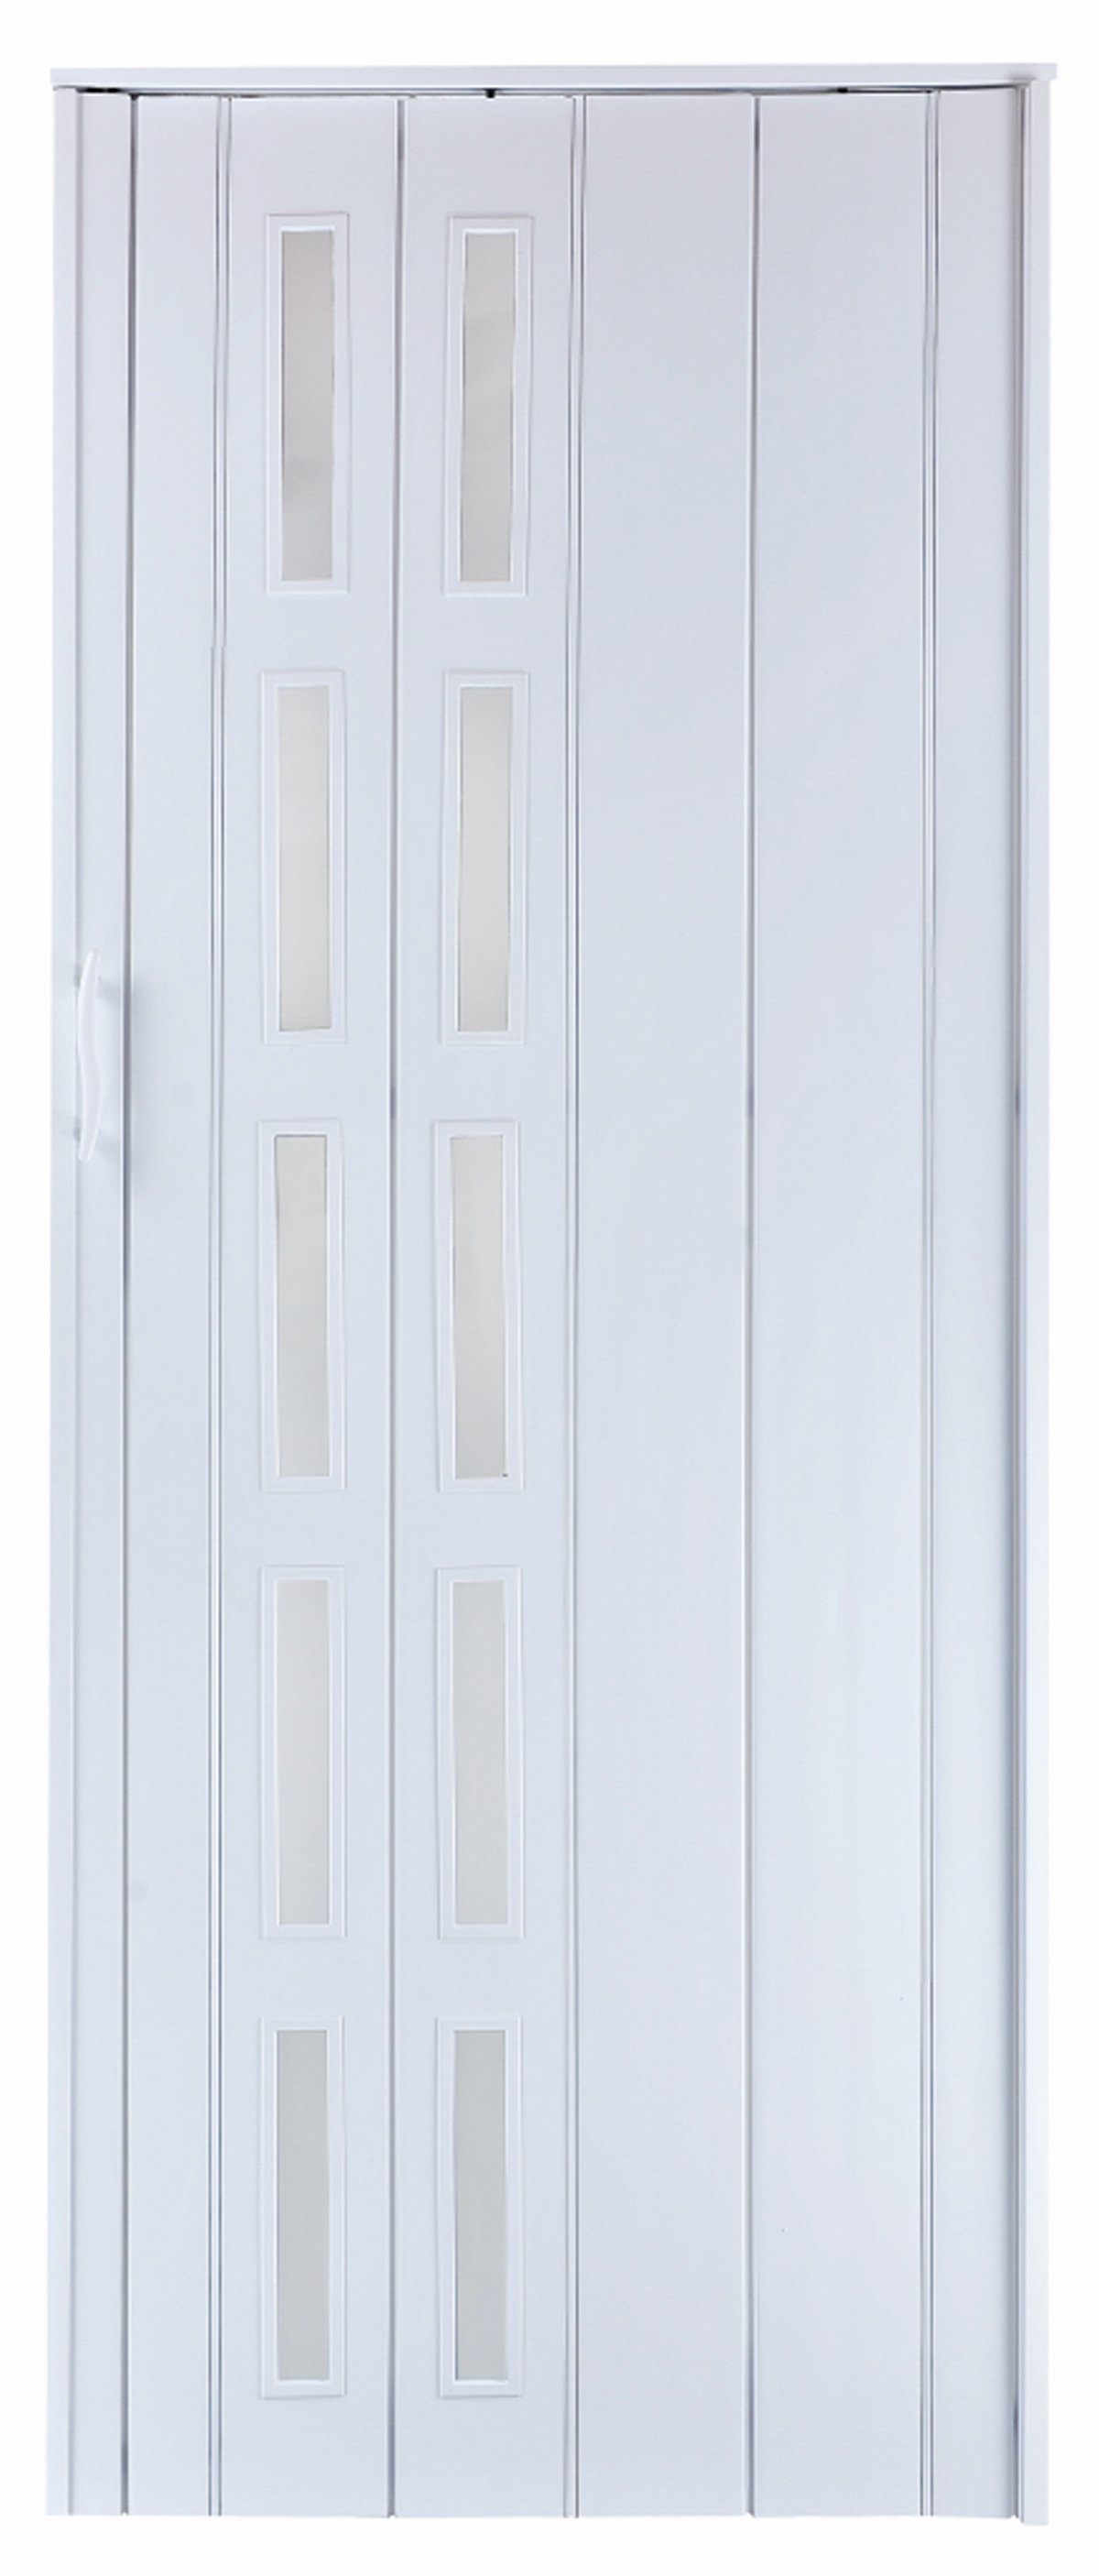 Standom Falttür Schiebetür weiß farben Fenster H. 201 cm für Türbreite bis 94 cm st5